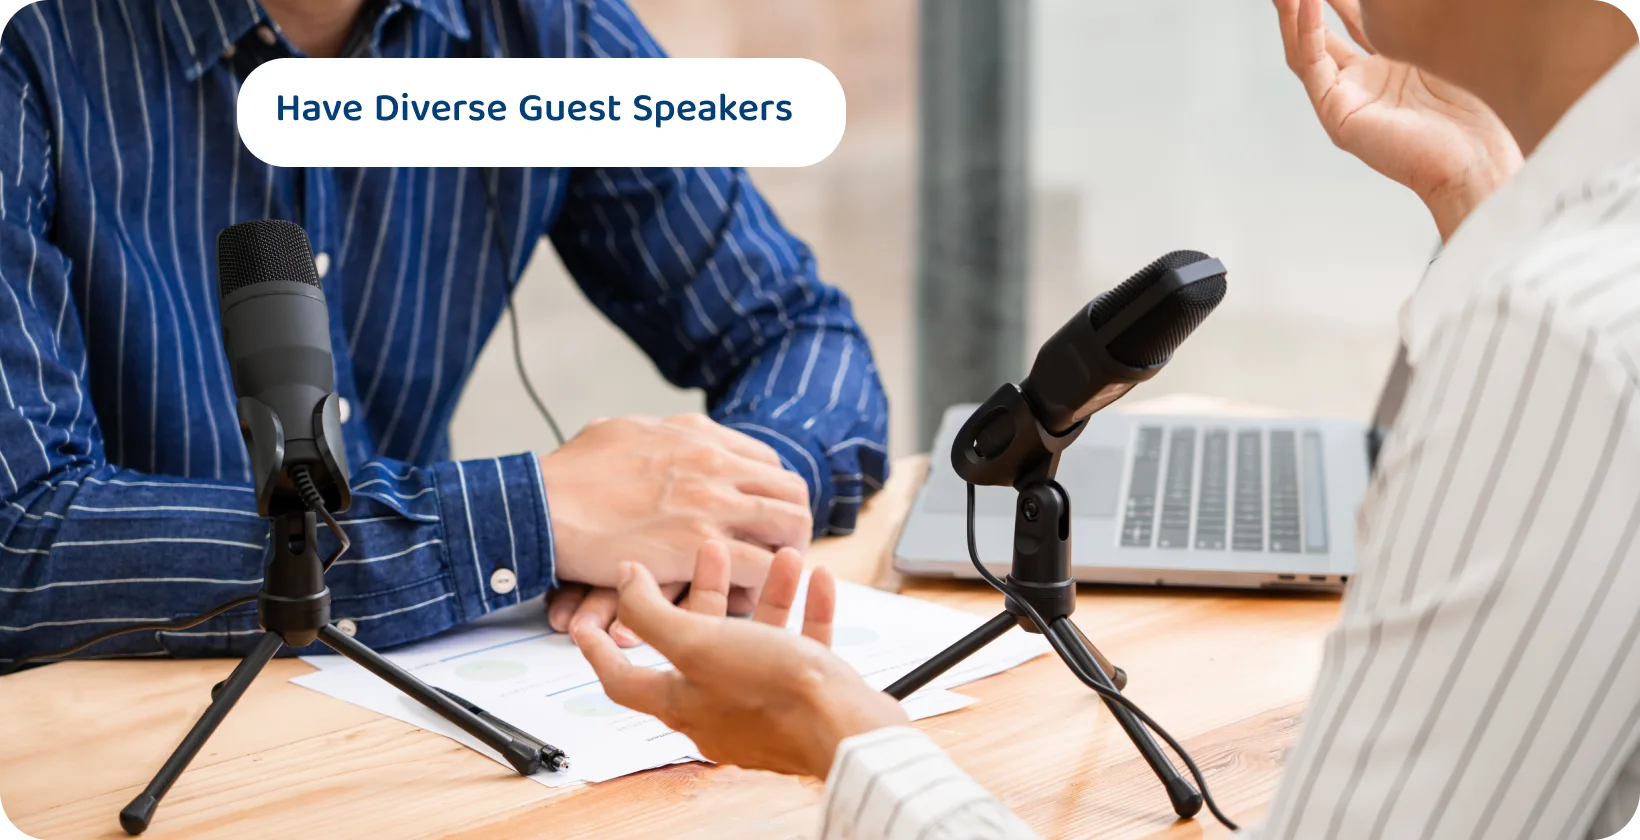 Kaksi podcasteria, joissa mikrofonit keskustelevat, voivat olla sisältövinkkejä kiinnostaviin ja monipuolisiin vierailevien puhujien istuntoihin.